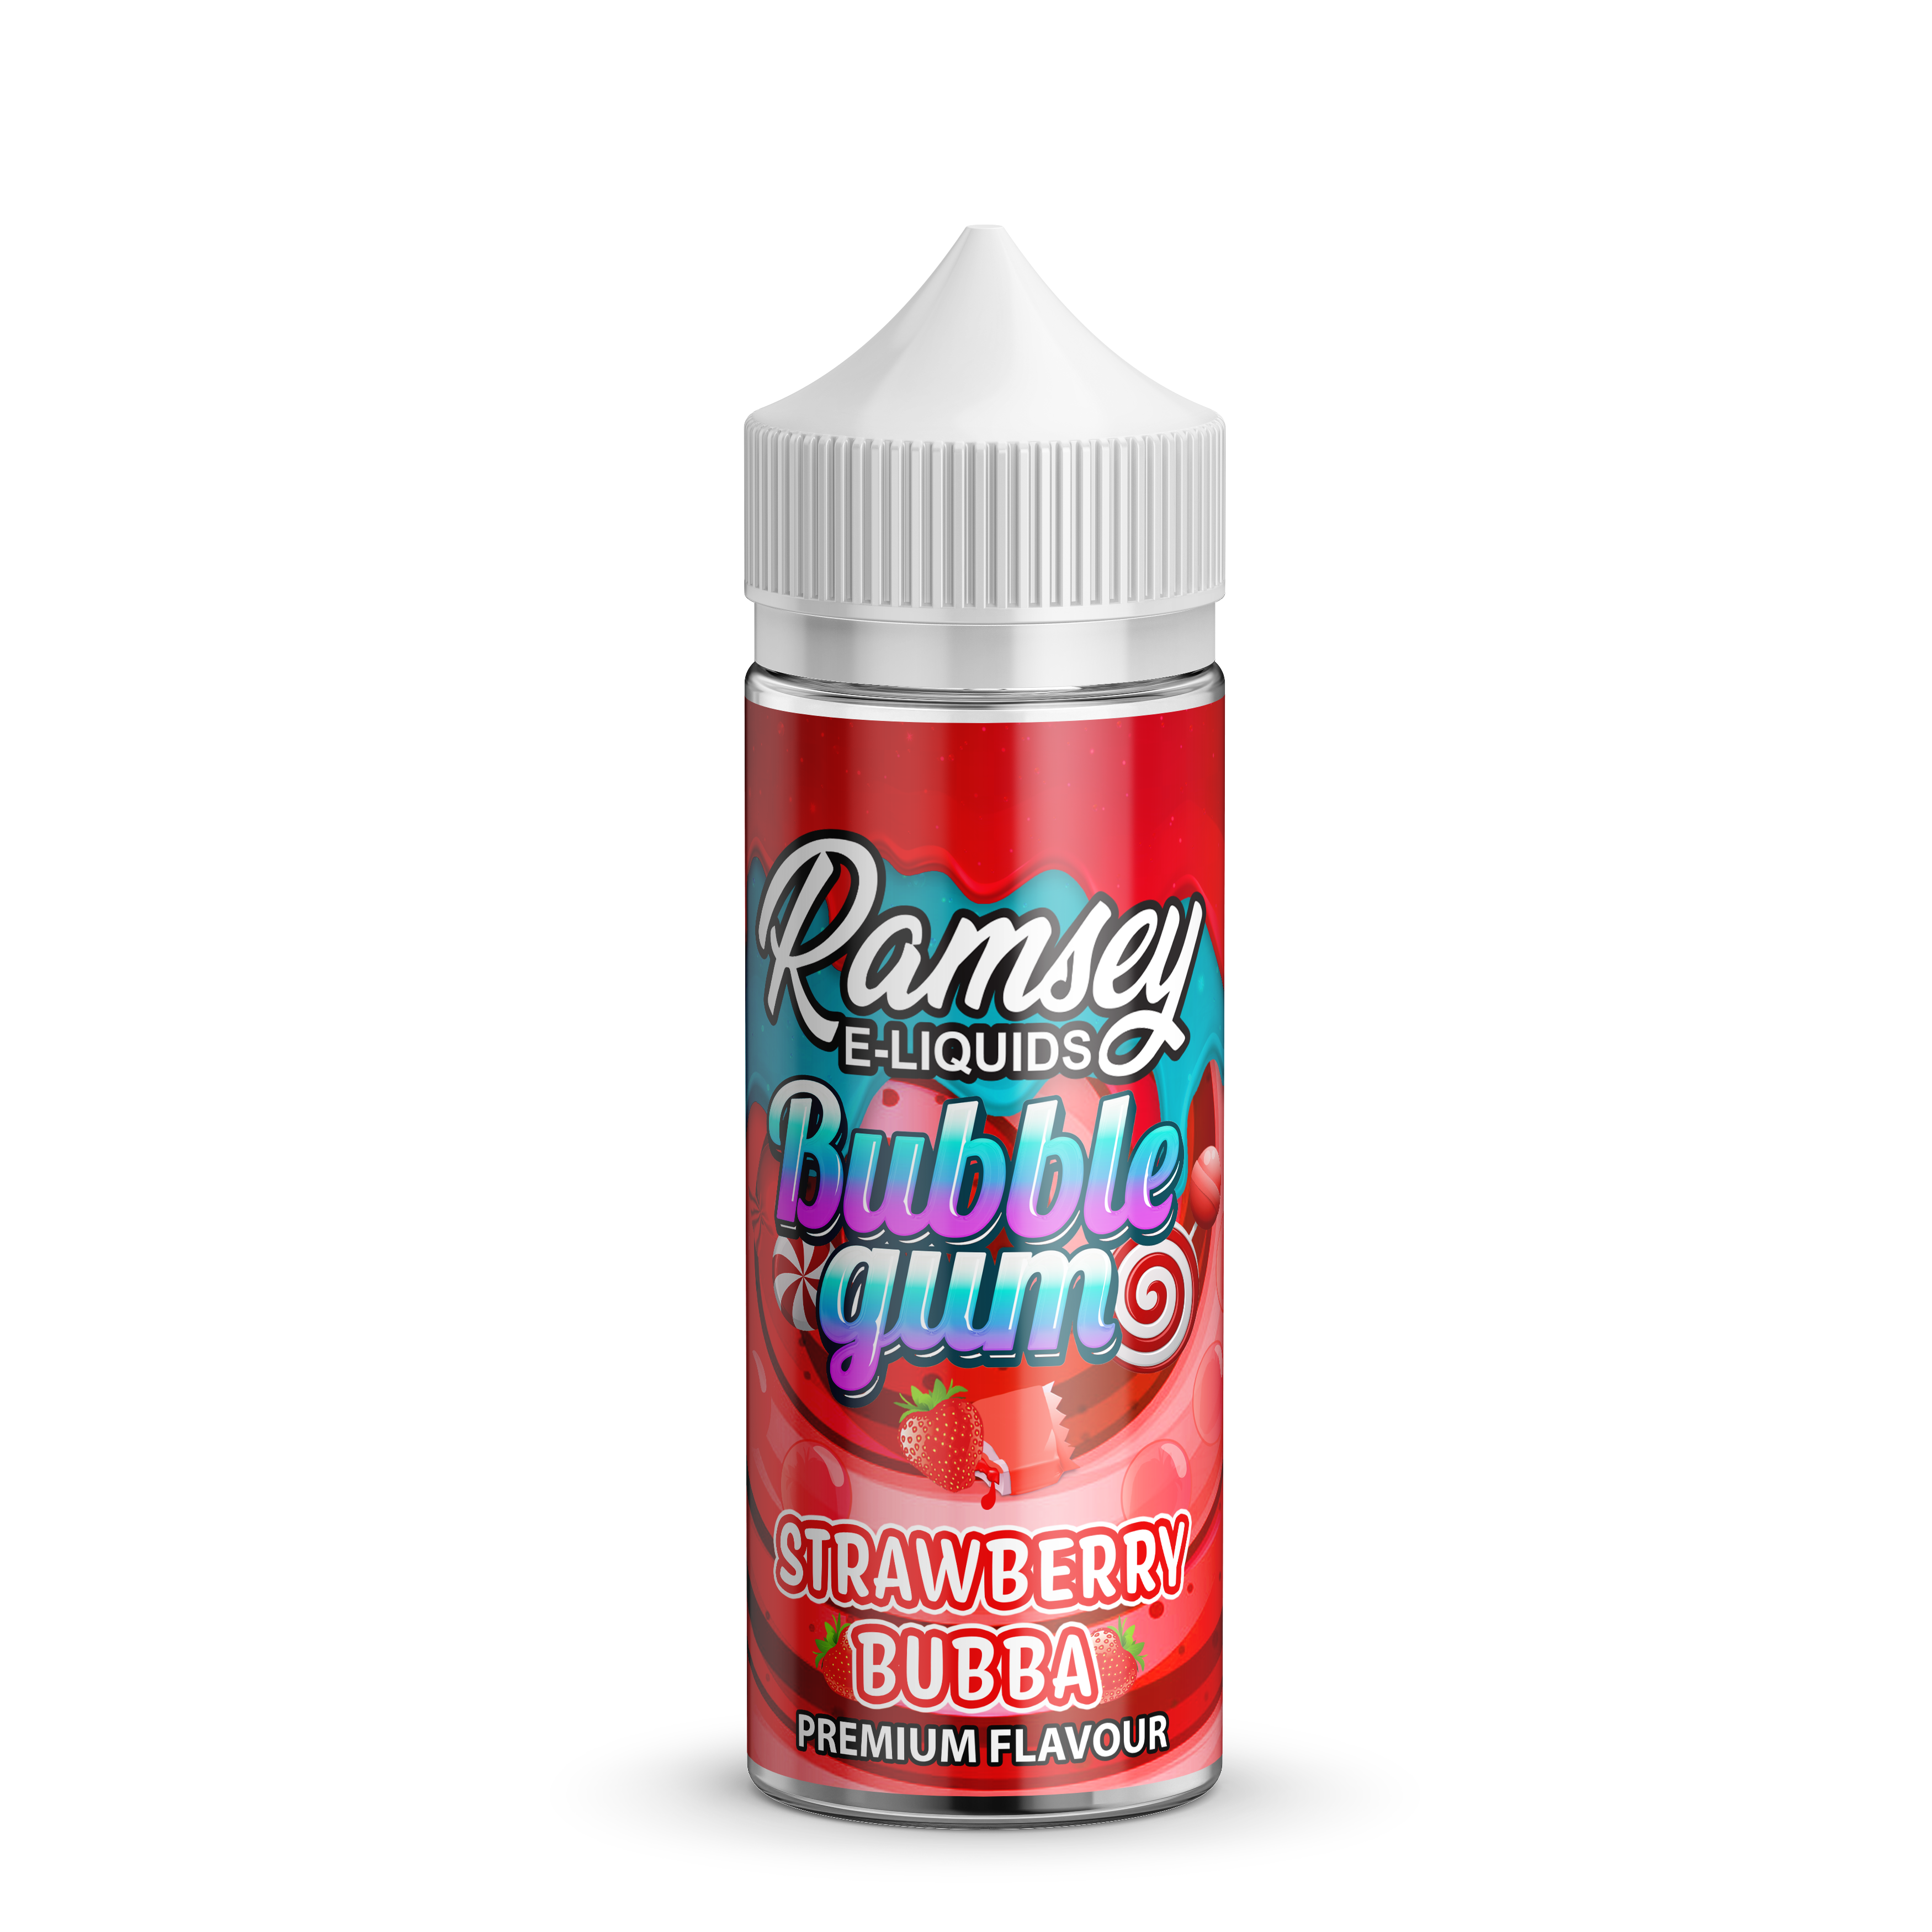 Ramsey E-Liquids Bubblegum Strawberry Bubba 0mg 100ml Shortfill E-Liquid